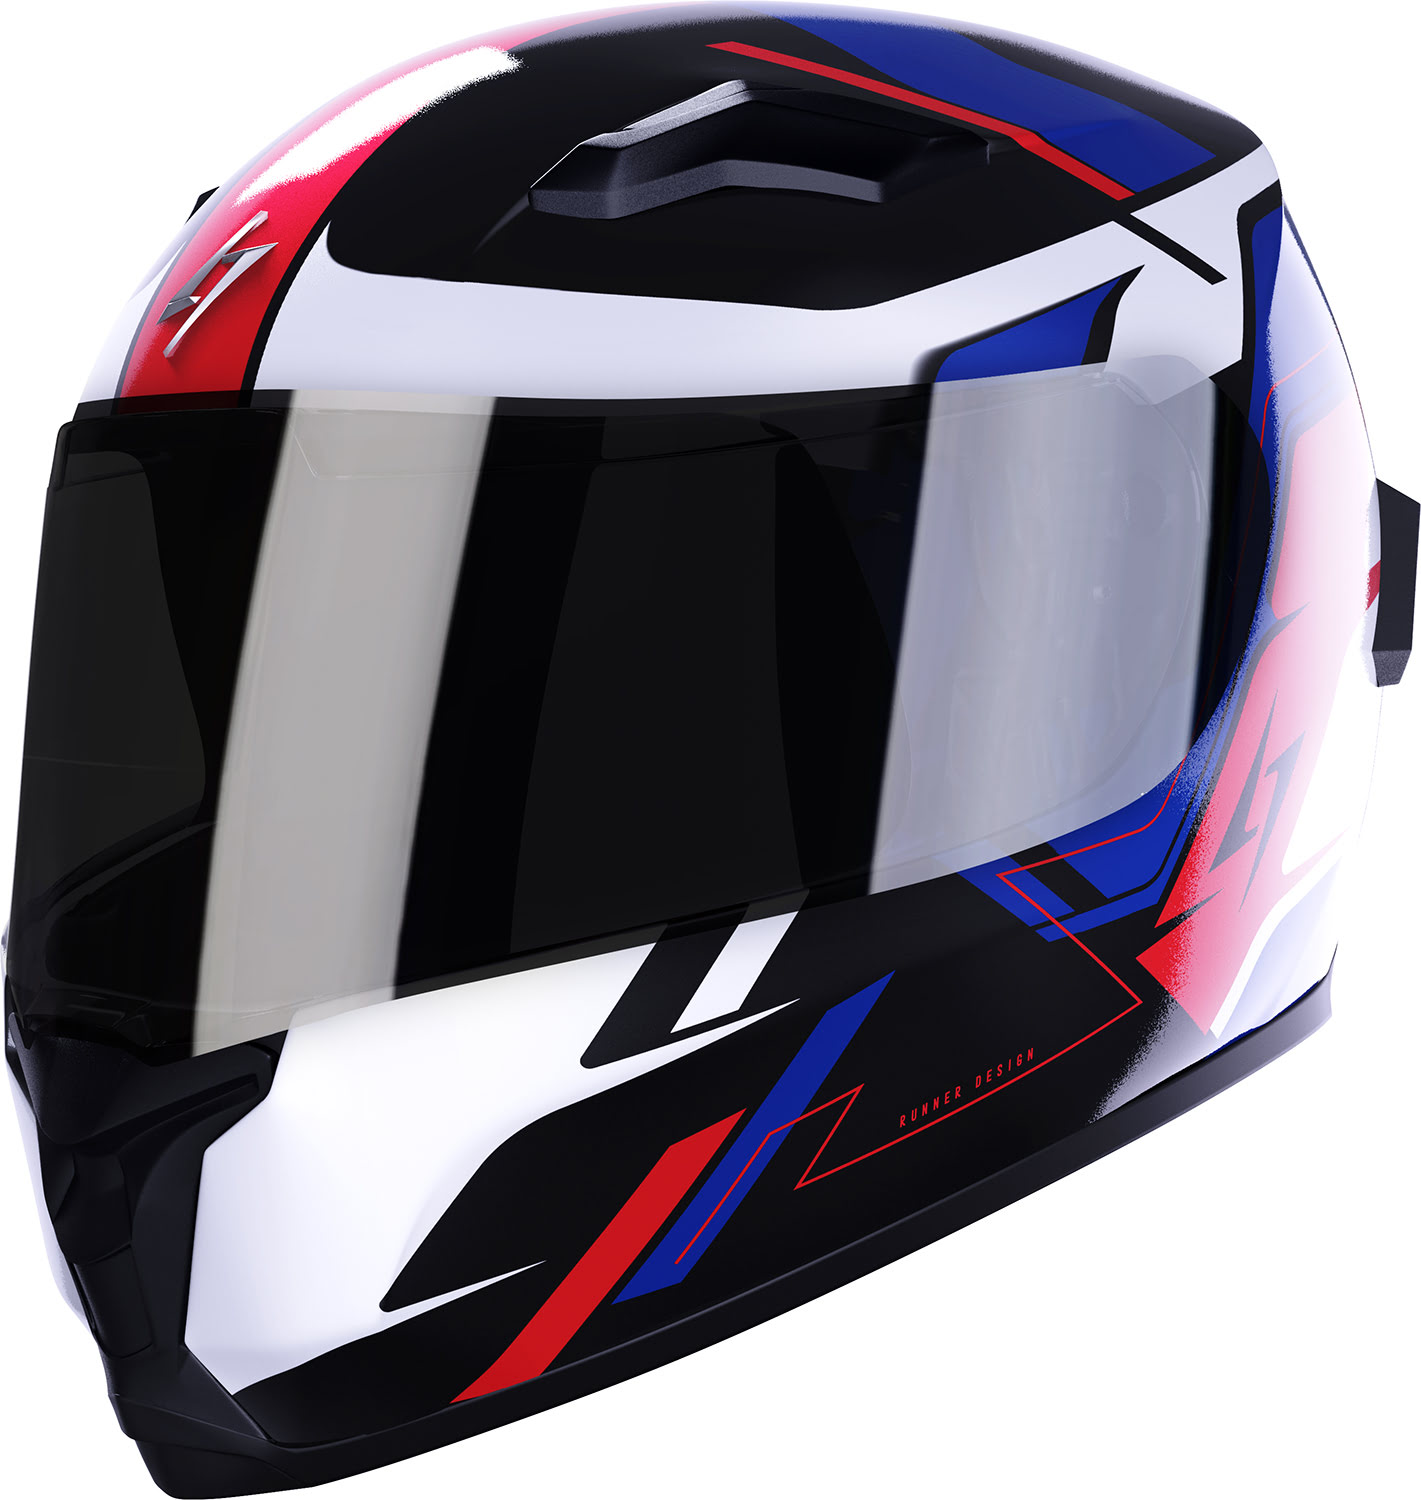 Helmet WISE RUNNER Blue / Red / White Pearly STORMER 